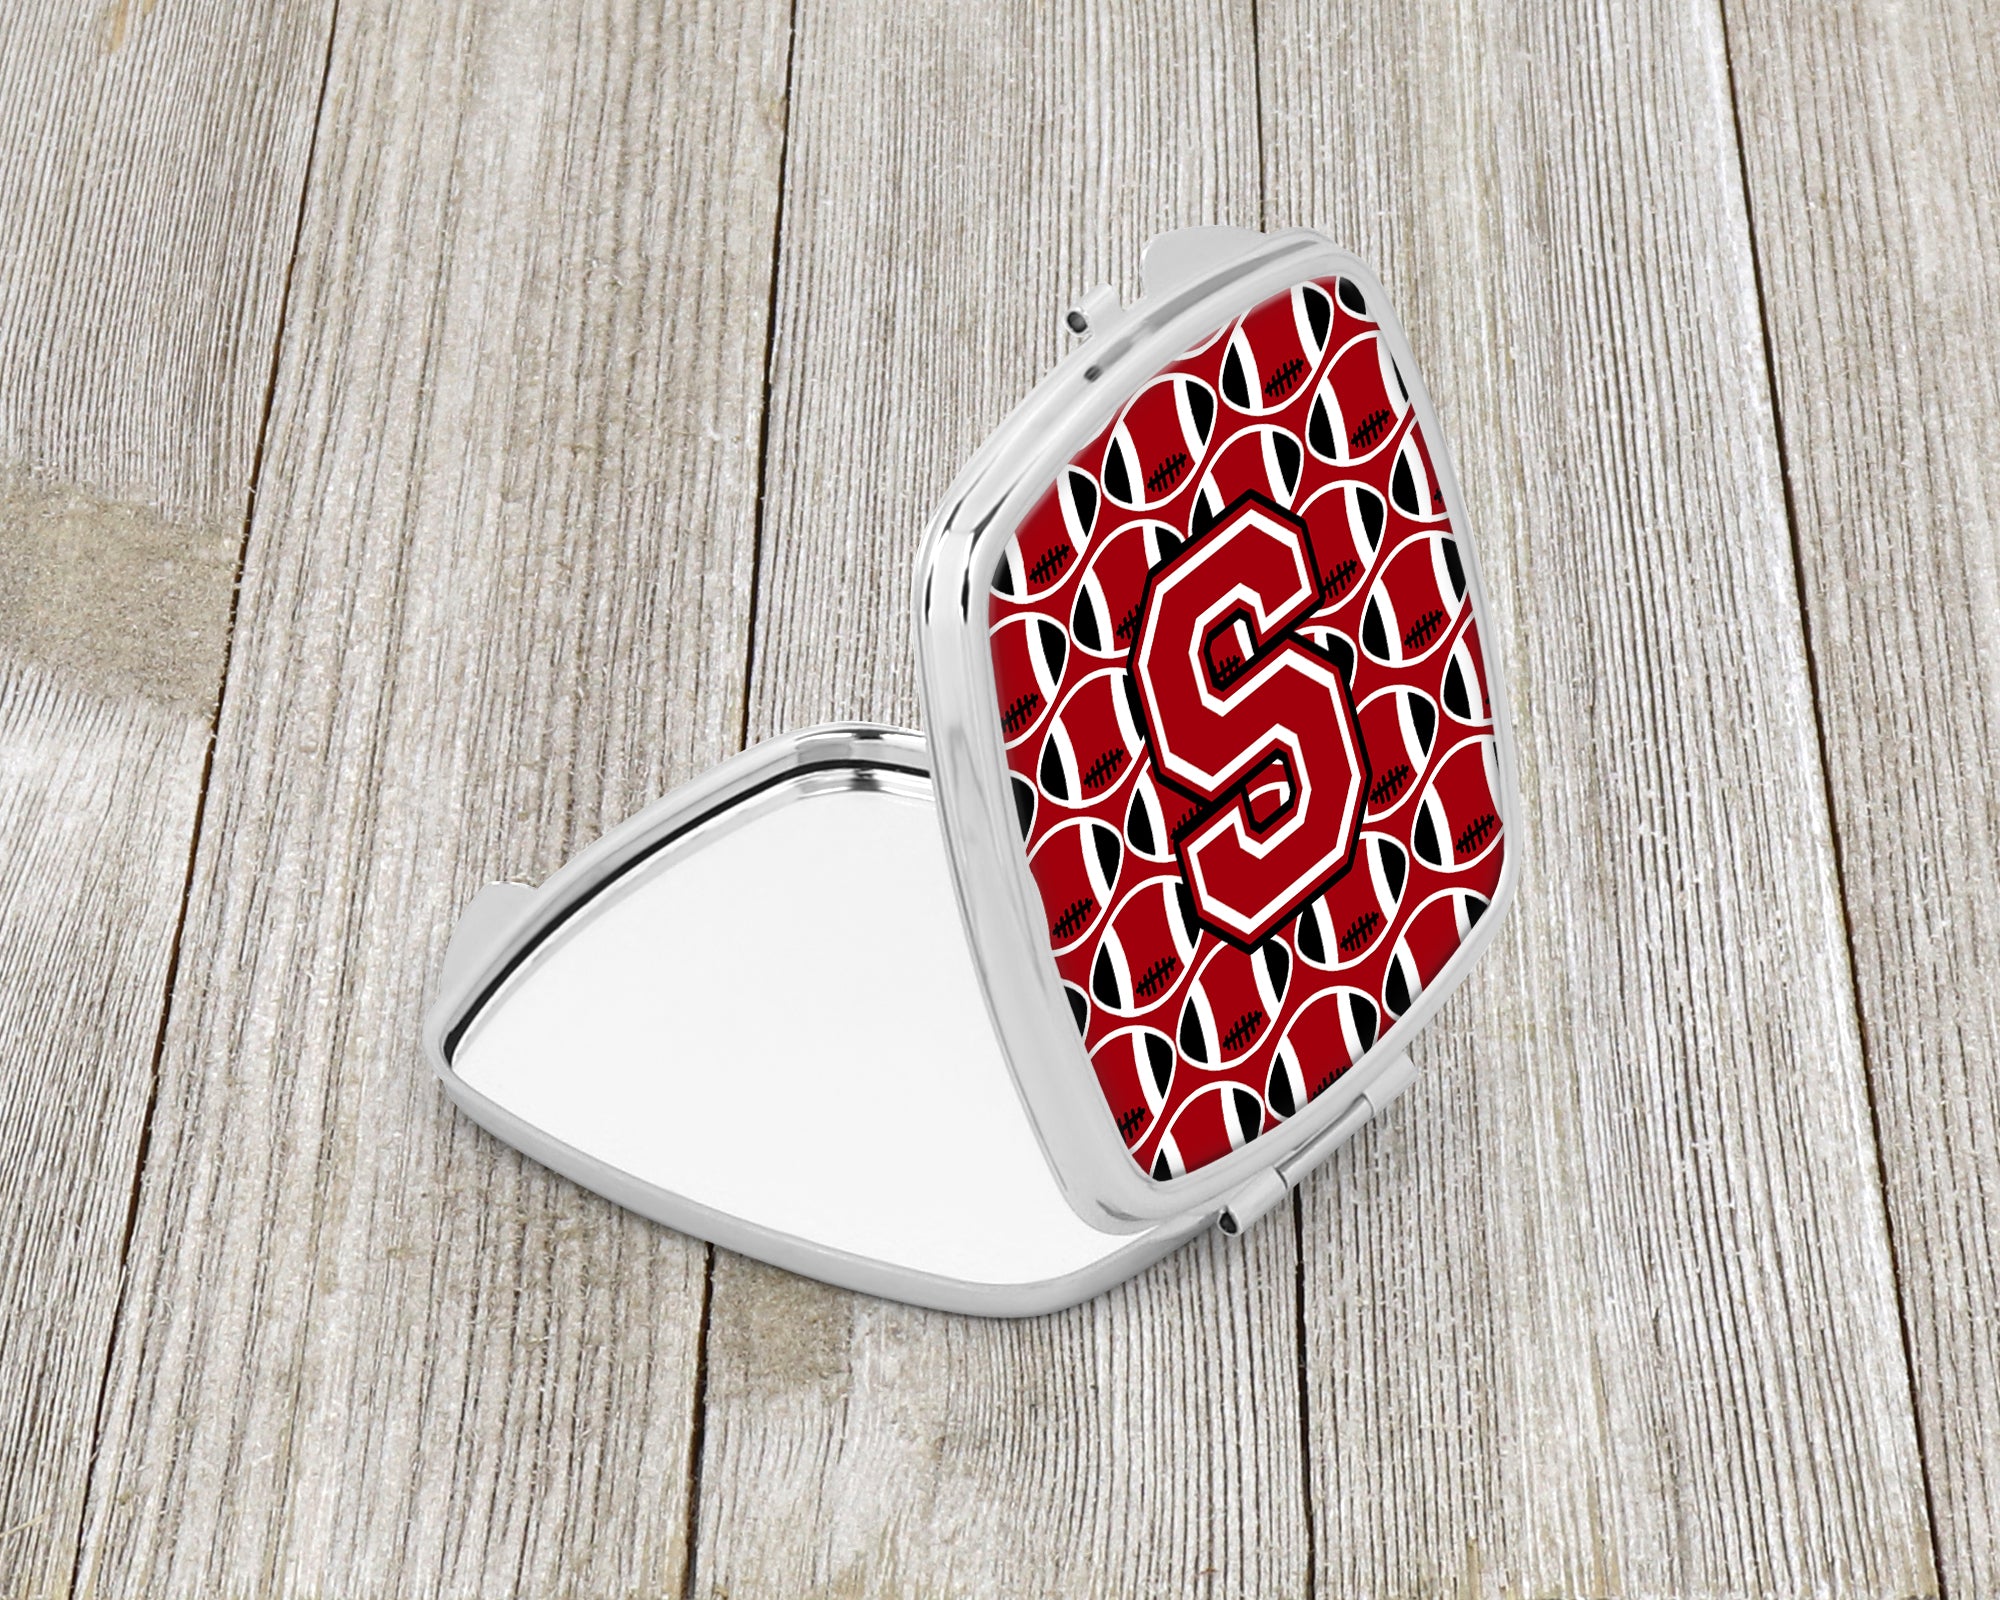 Miroir compact lettre S football rouge, noir et blanc CJ1073-SSCM